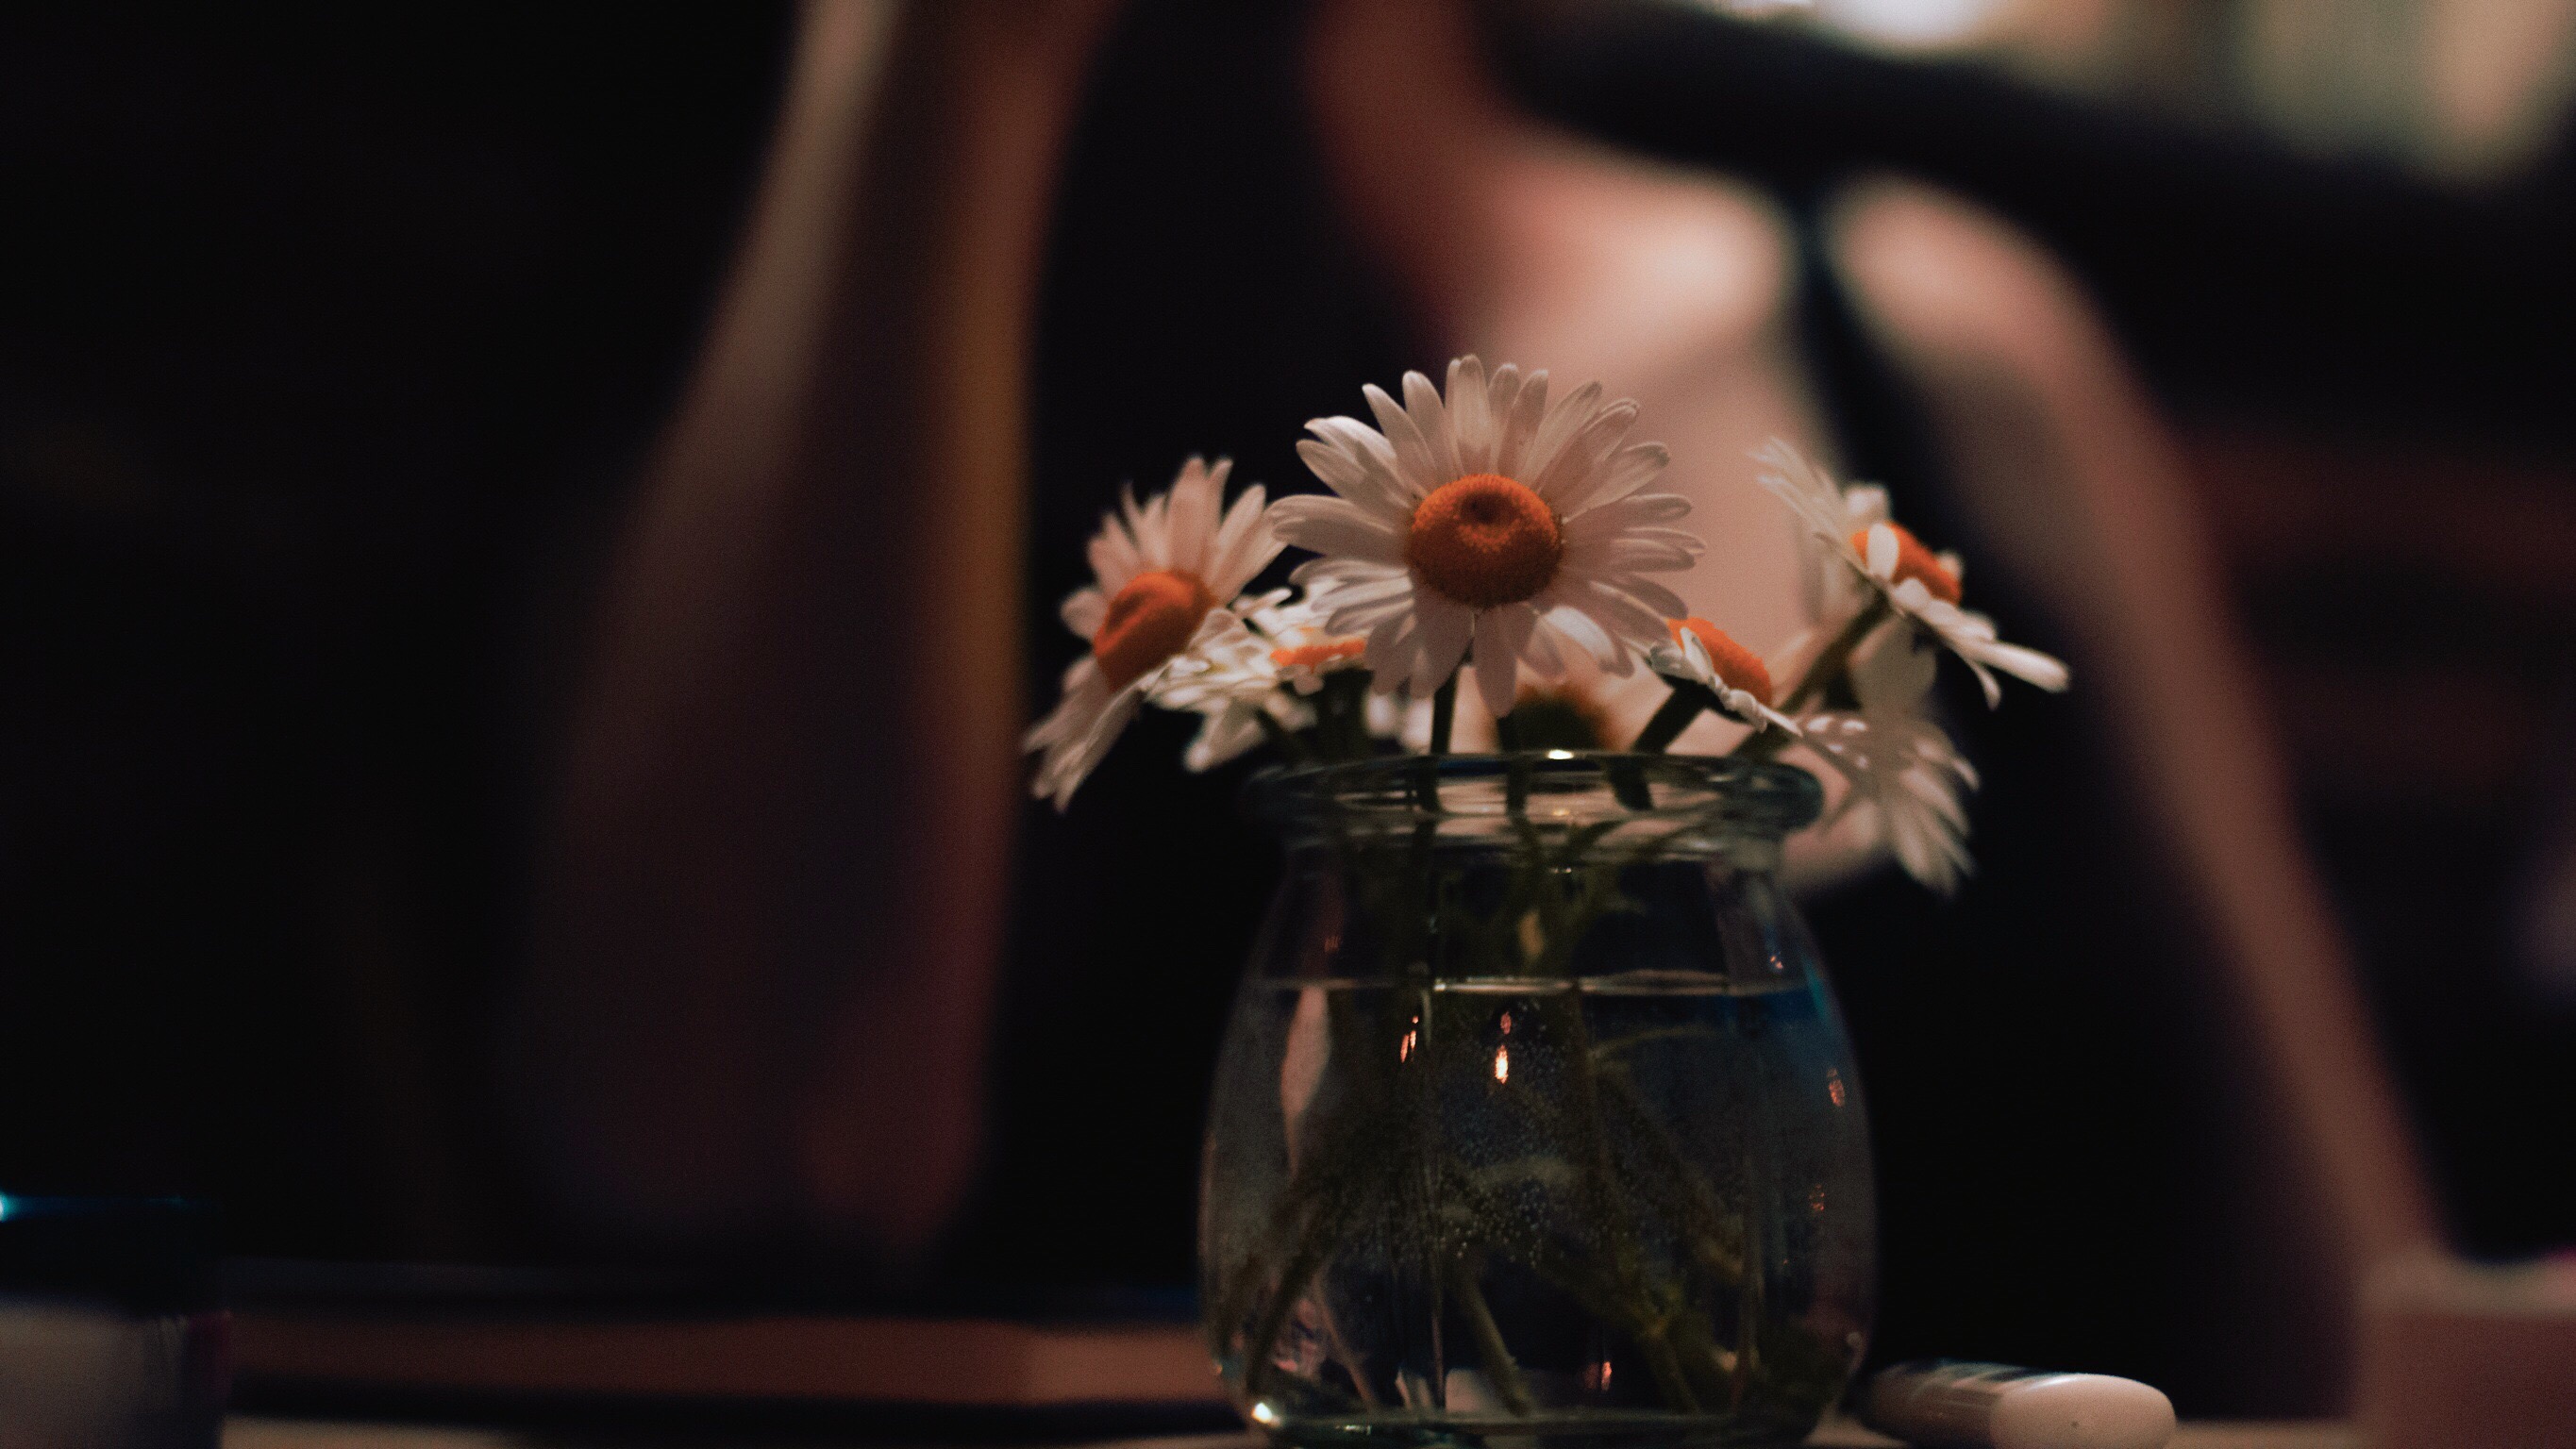 Nahaufnahme einer Vase mit Gänseblümchen (engl. Daisy, wie der Name der Protagonistin), die Stimmung im Bild ist eher düster, im Hintergrund ist unscharf eine Person zu erkennen.